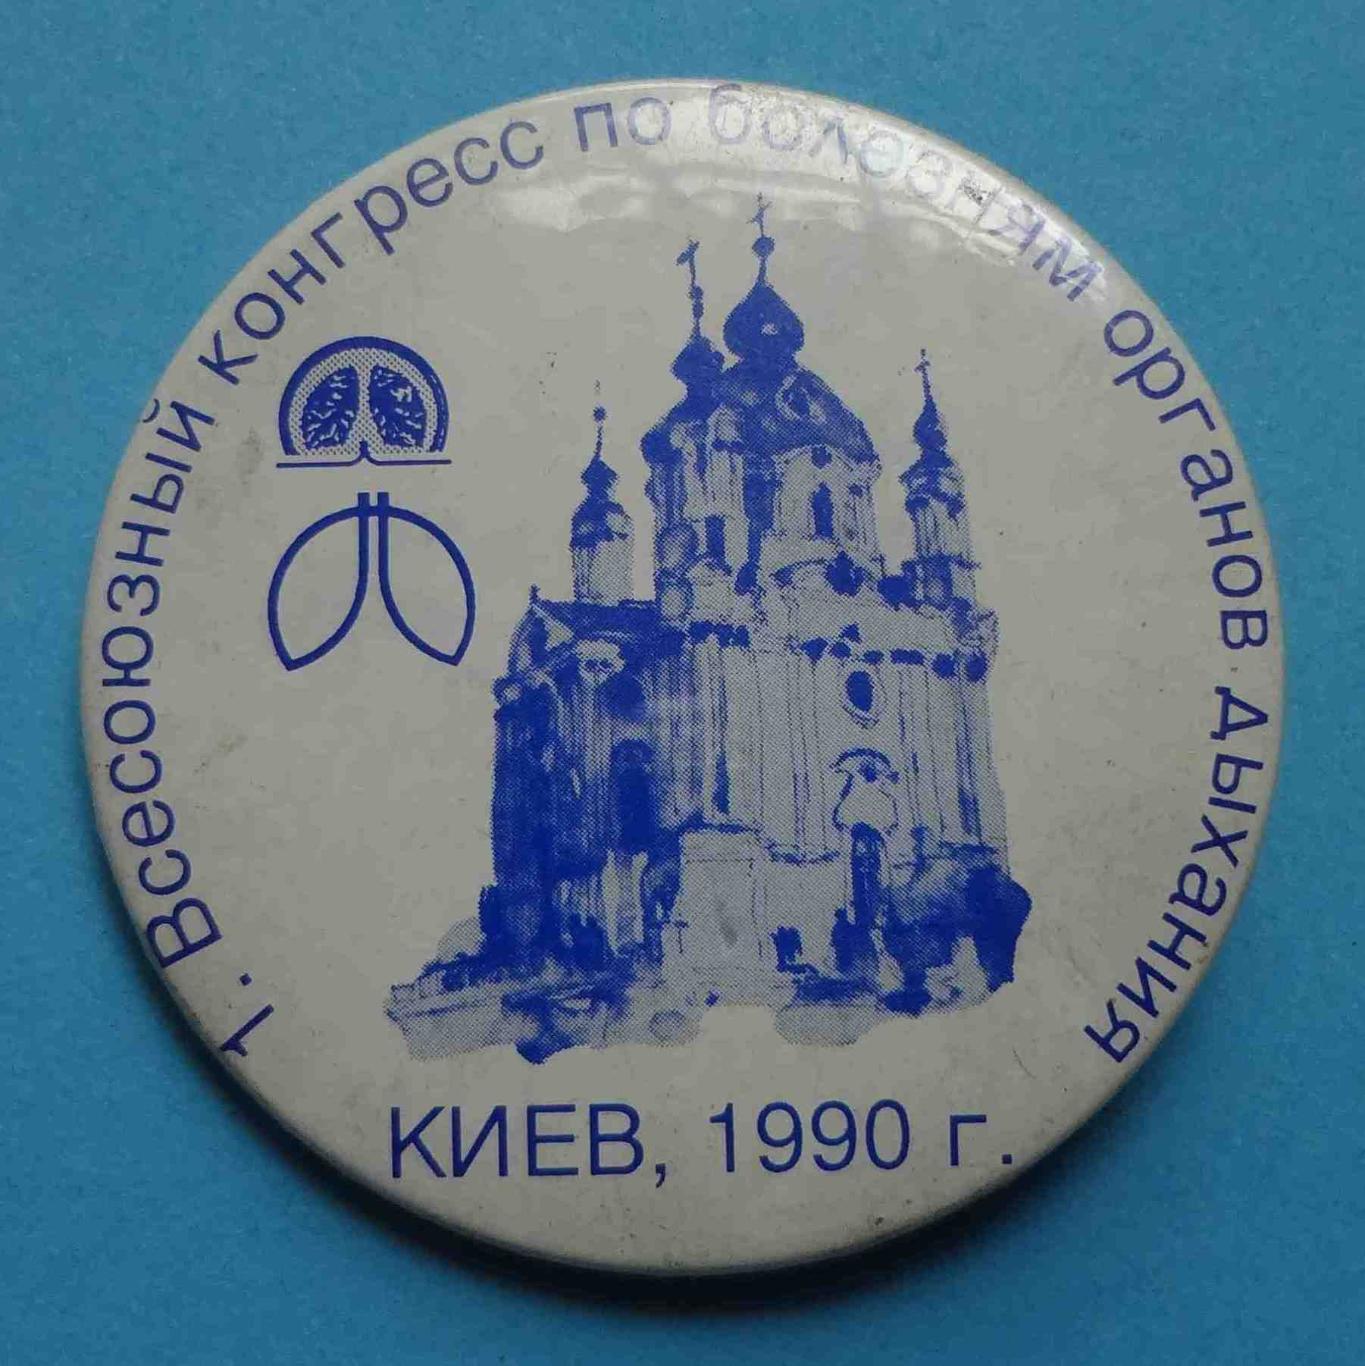 1 Всесоюзный конгресс по болезням органов дыхания Киев 1990 Медицина церковь (17